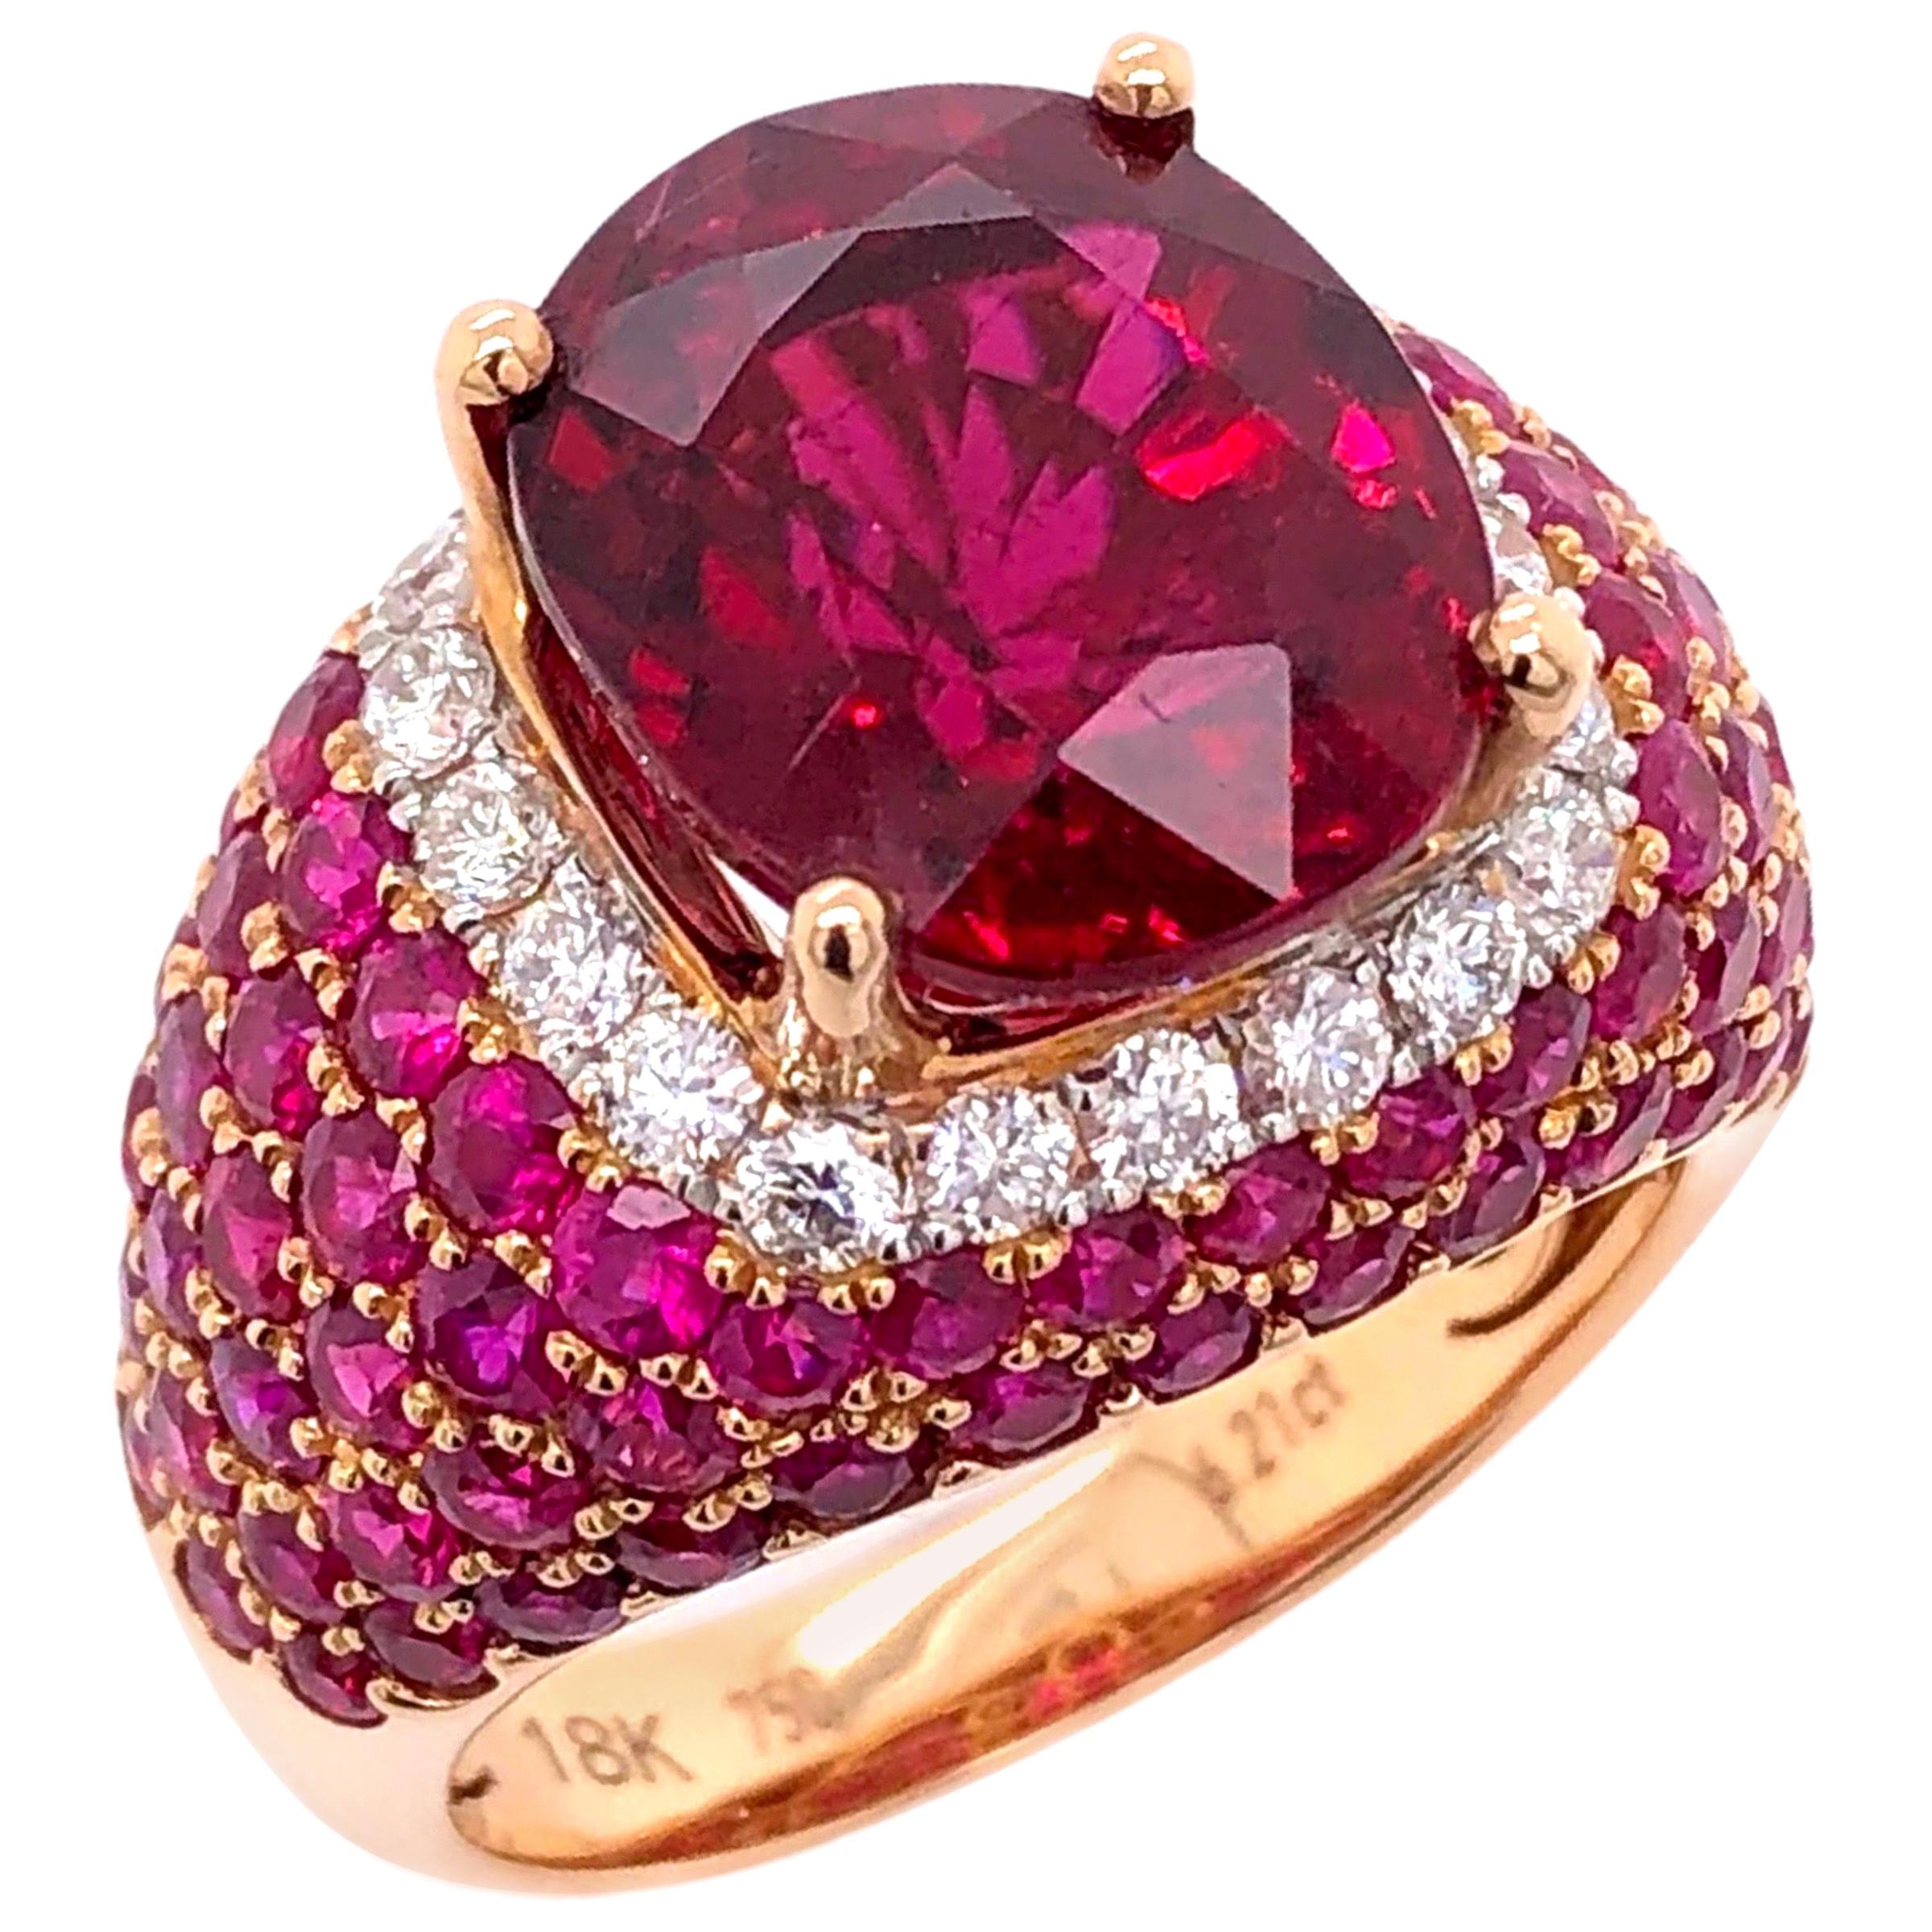 Paris Craft House 6.21 Carat Rubellite Ruby Diamond Ring in 18 Karat ...